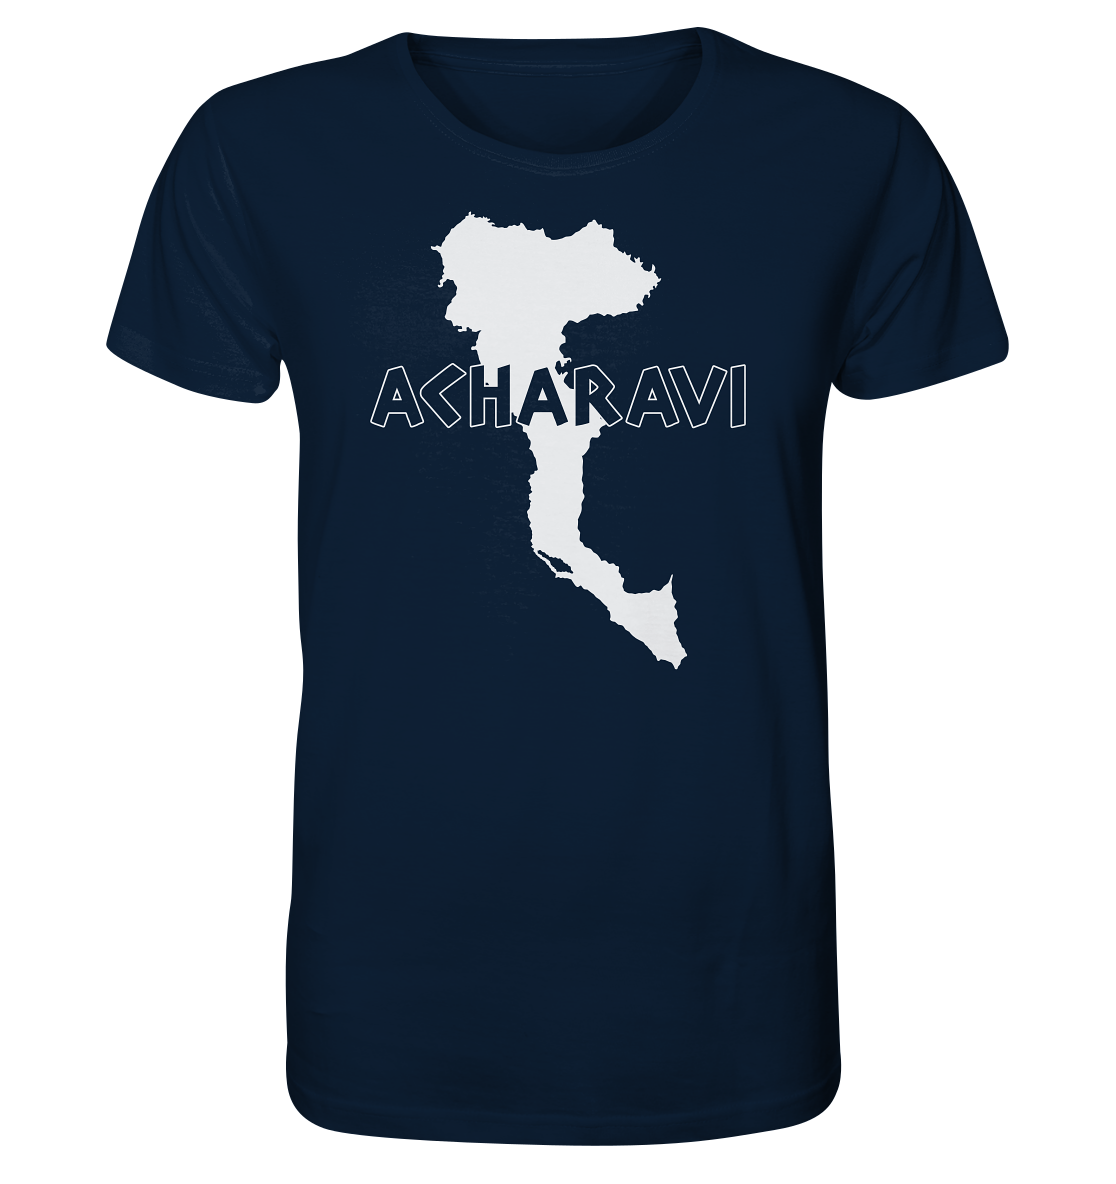 Acharavi Korfu Silhouette - Organic Shirt